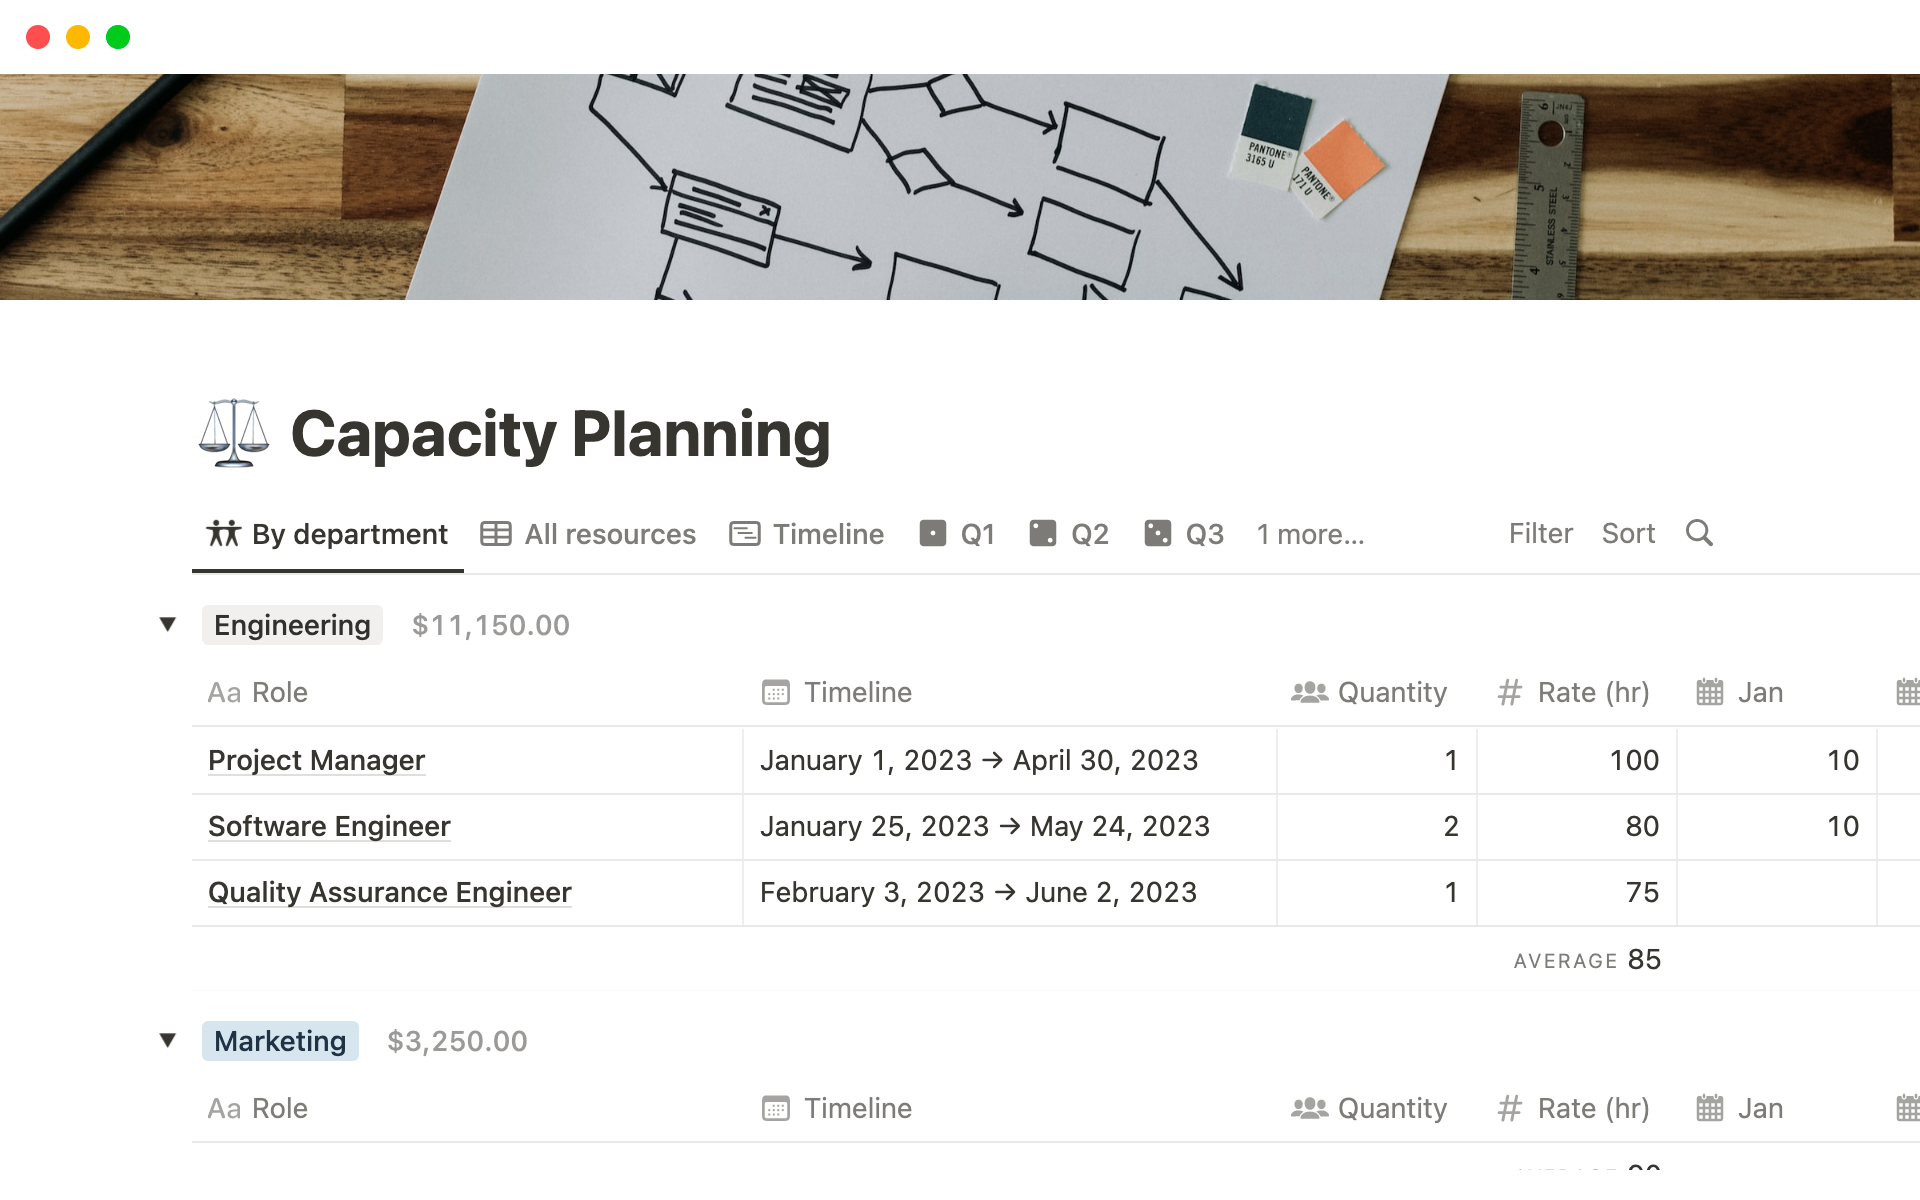 Vista previa de una plantilla para Capacity Planning